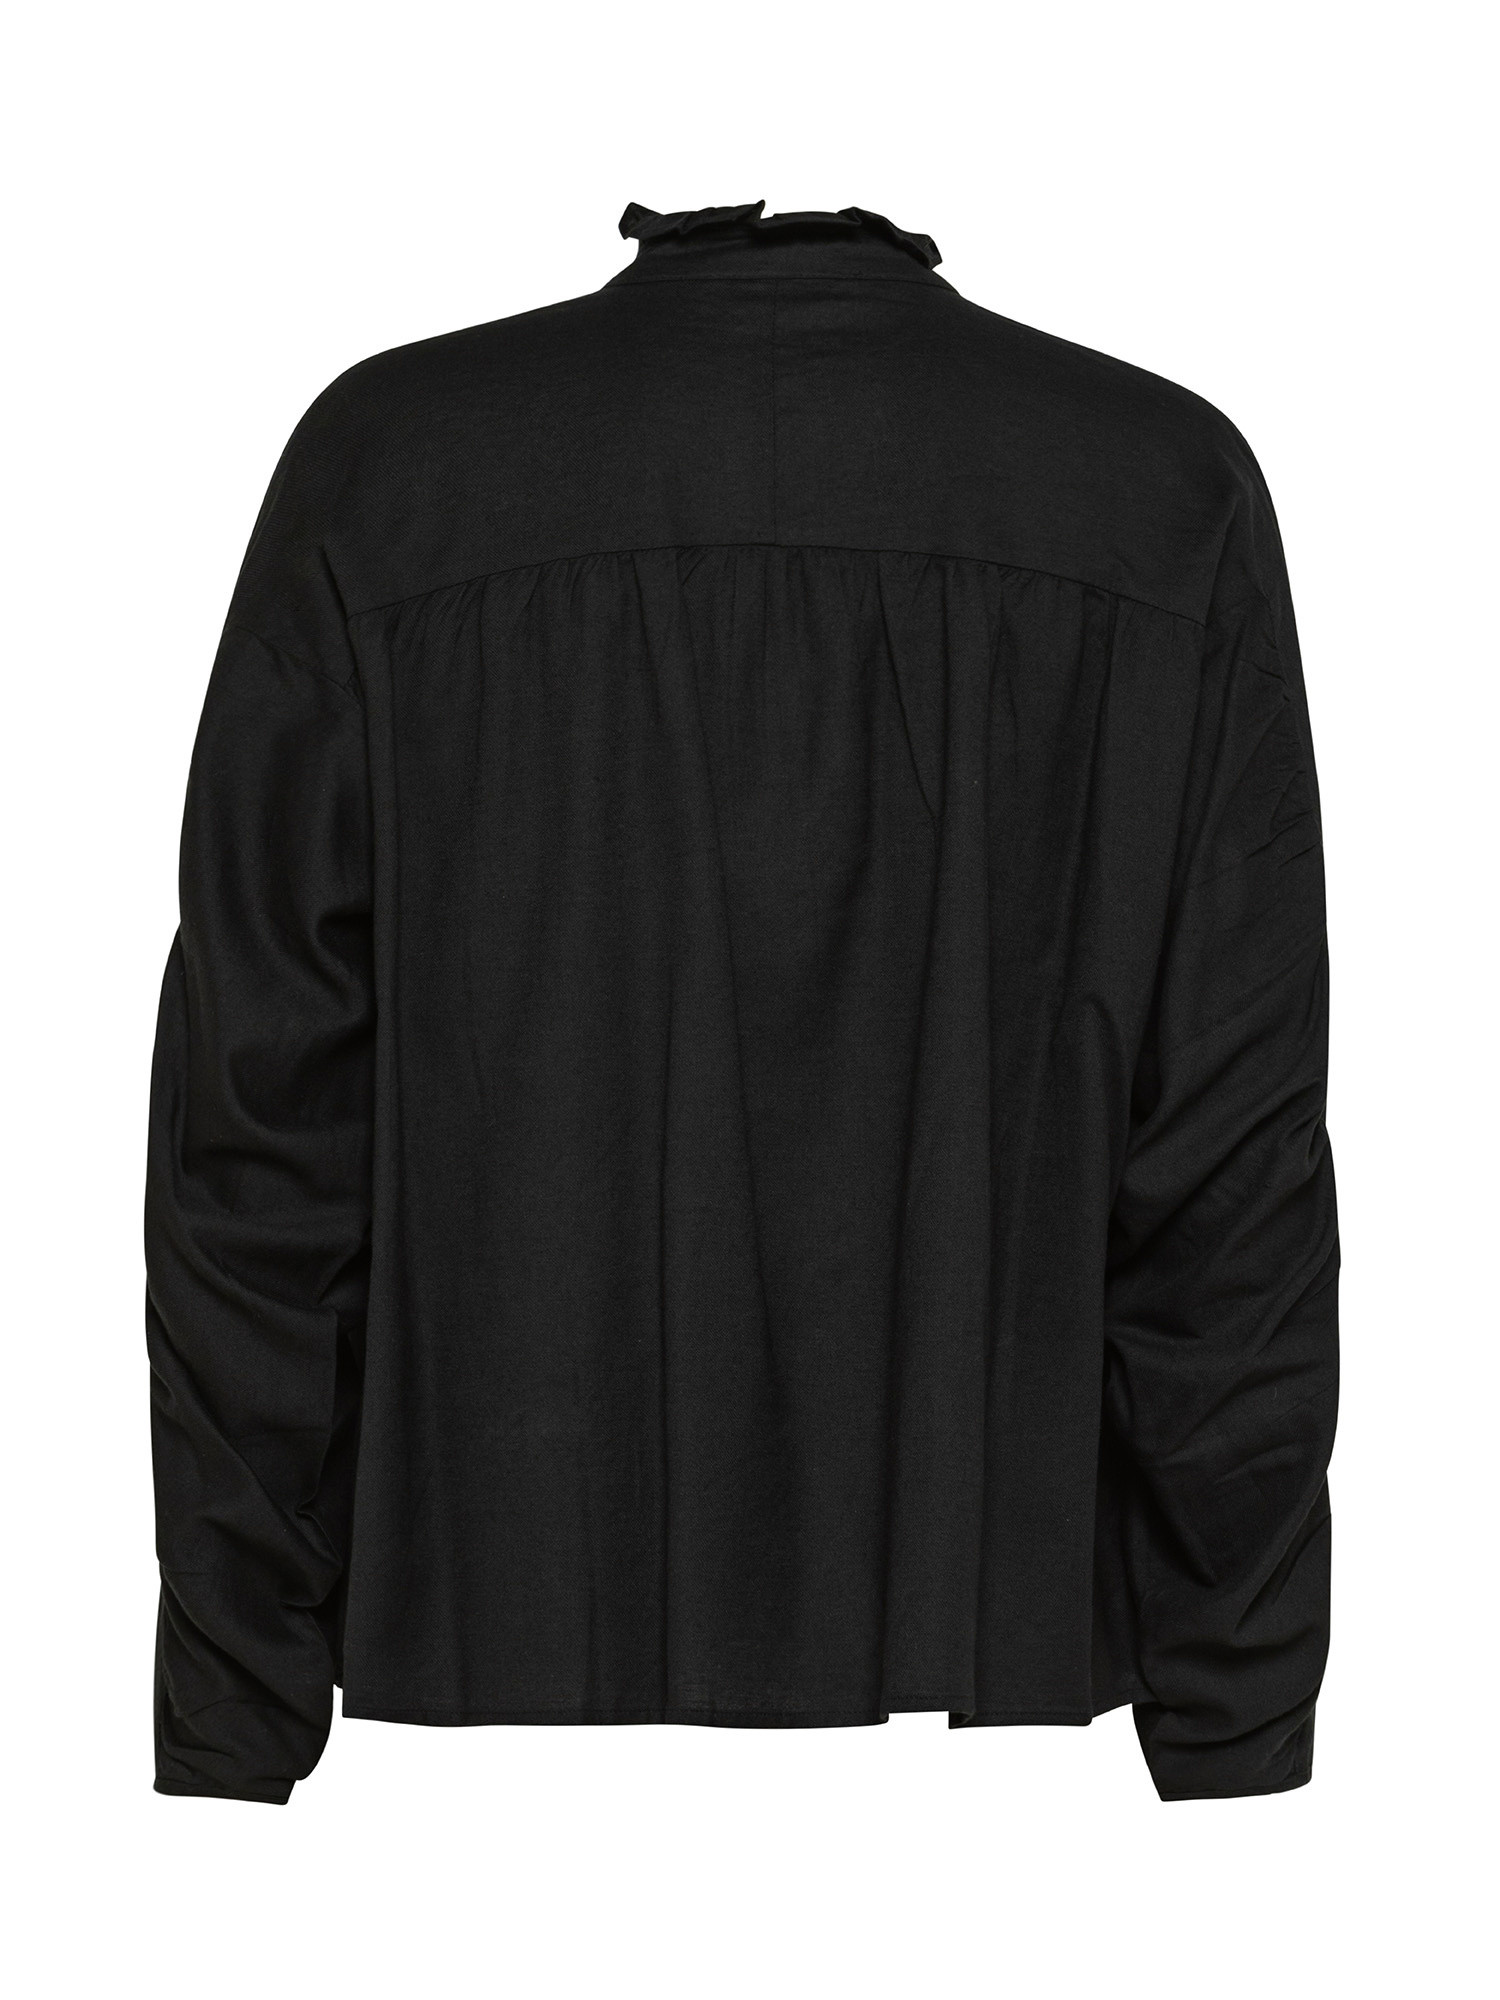 Blusa in cotone con maniche lunghe, Nero, large image number 1